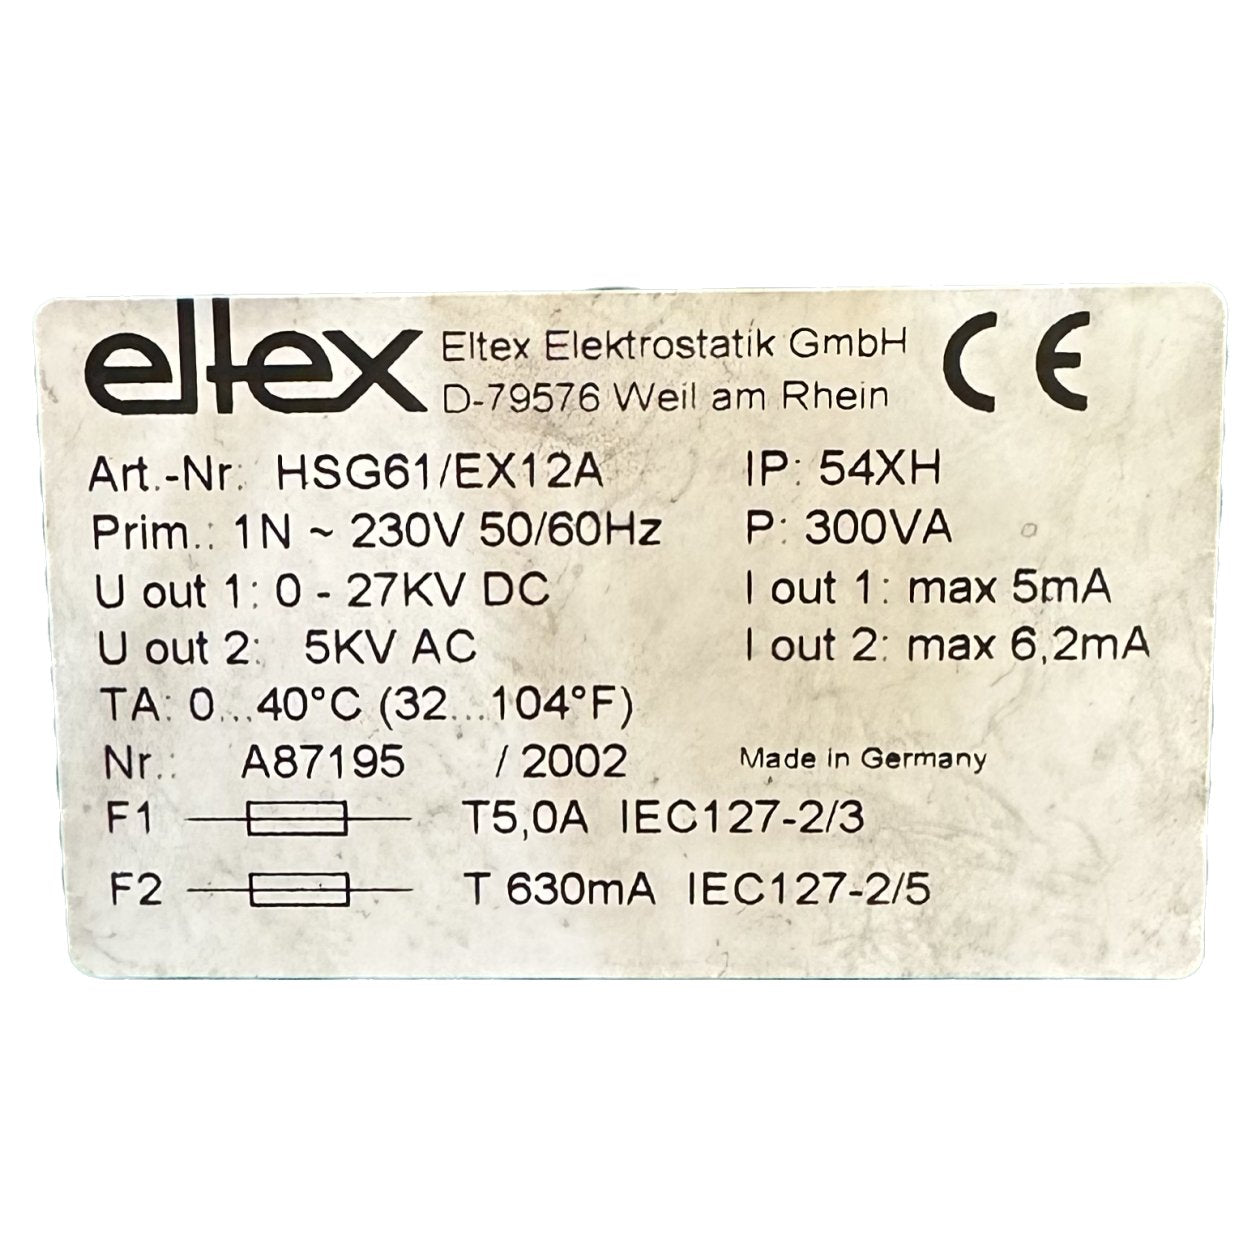 DJ110 Eltex HSG61/EX12A_4